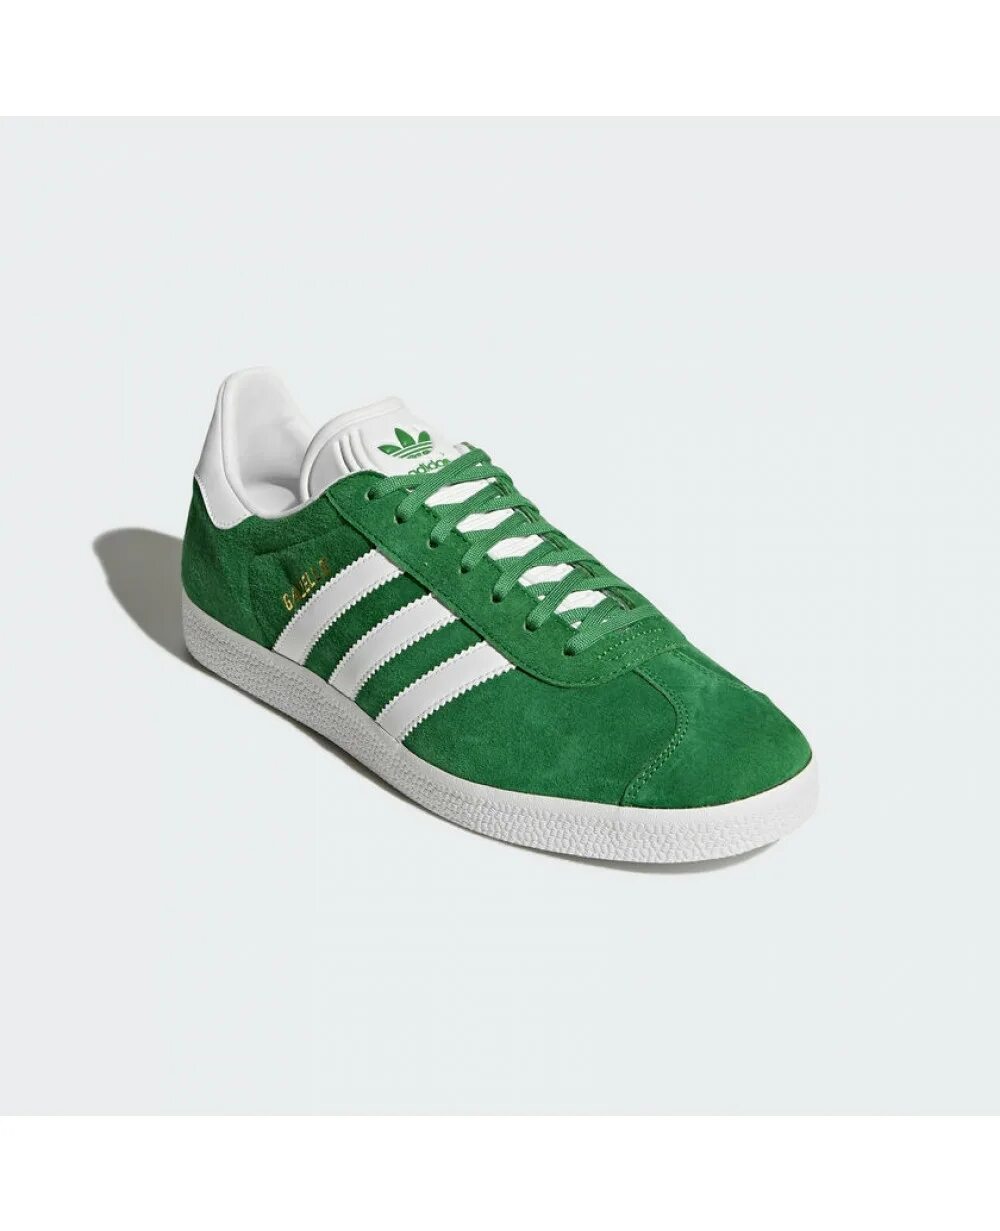 Кроссовки adidas Gazelle Green. Adidas Gazelle зеленые. Adidas Gazelle Green Original. Adidas кеды Gazelle зеленый. Кеды адидас зеленые